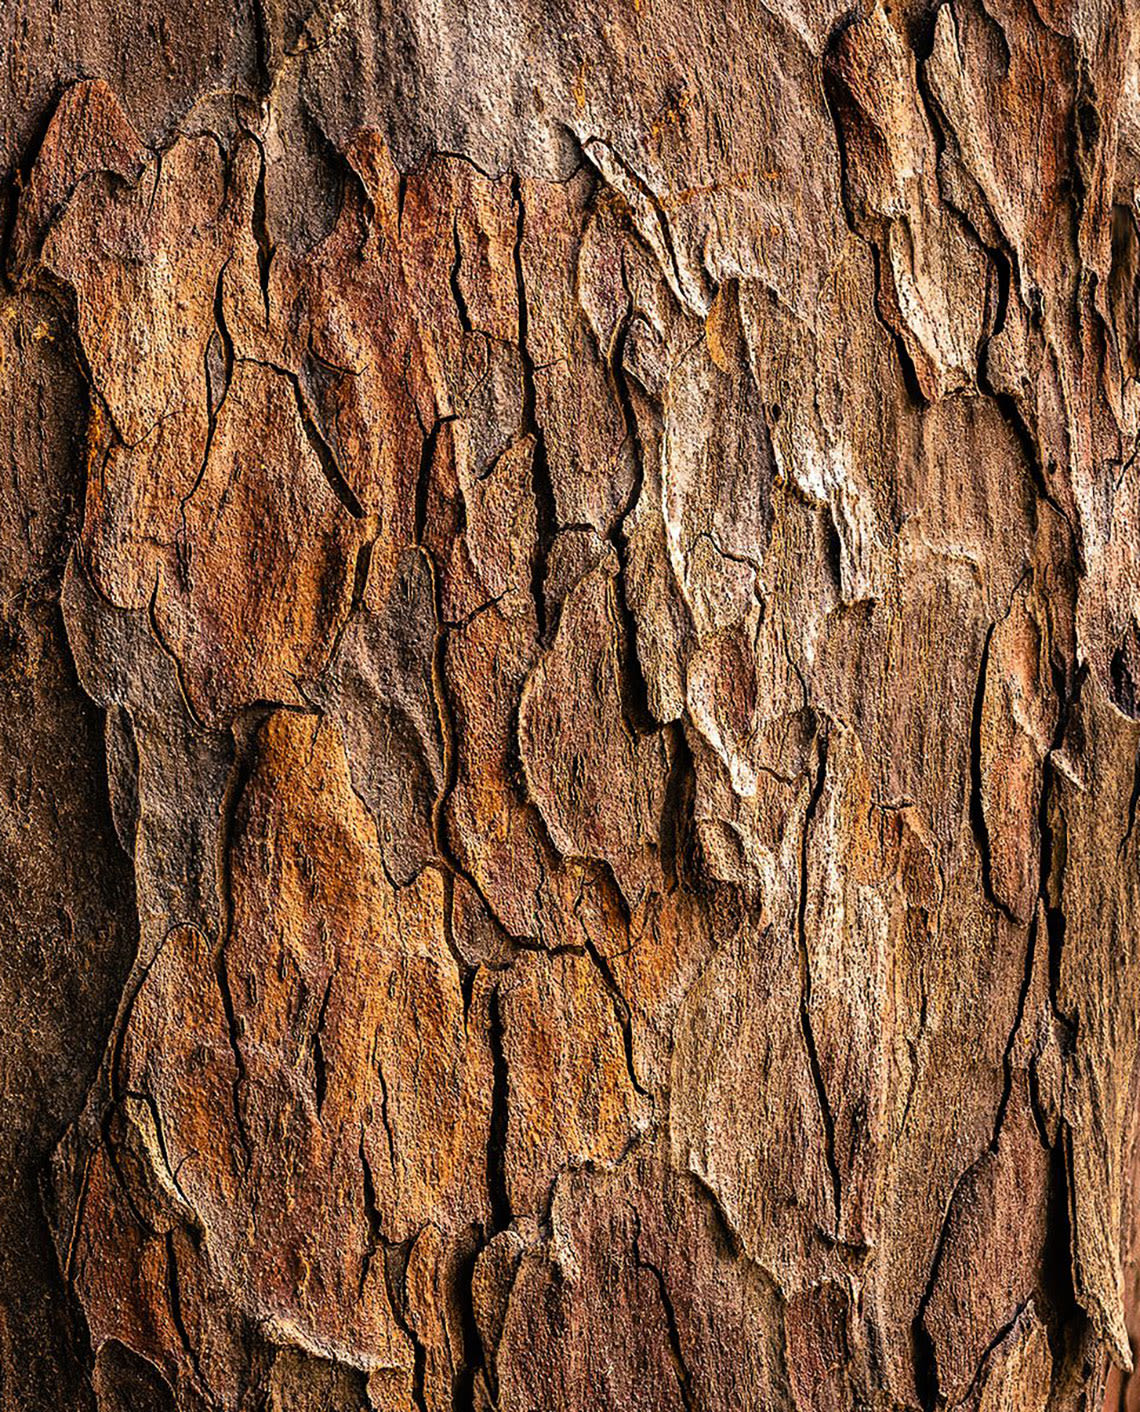 Salix Nigra Bark